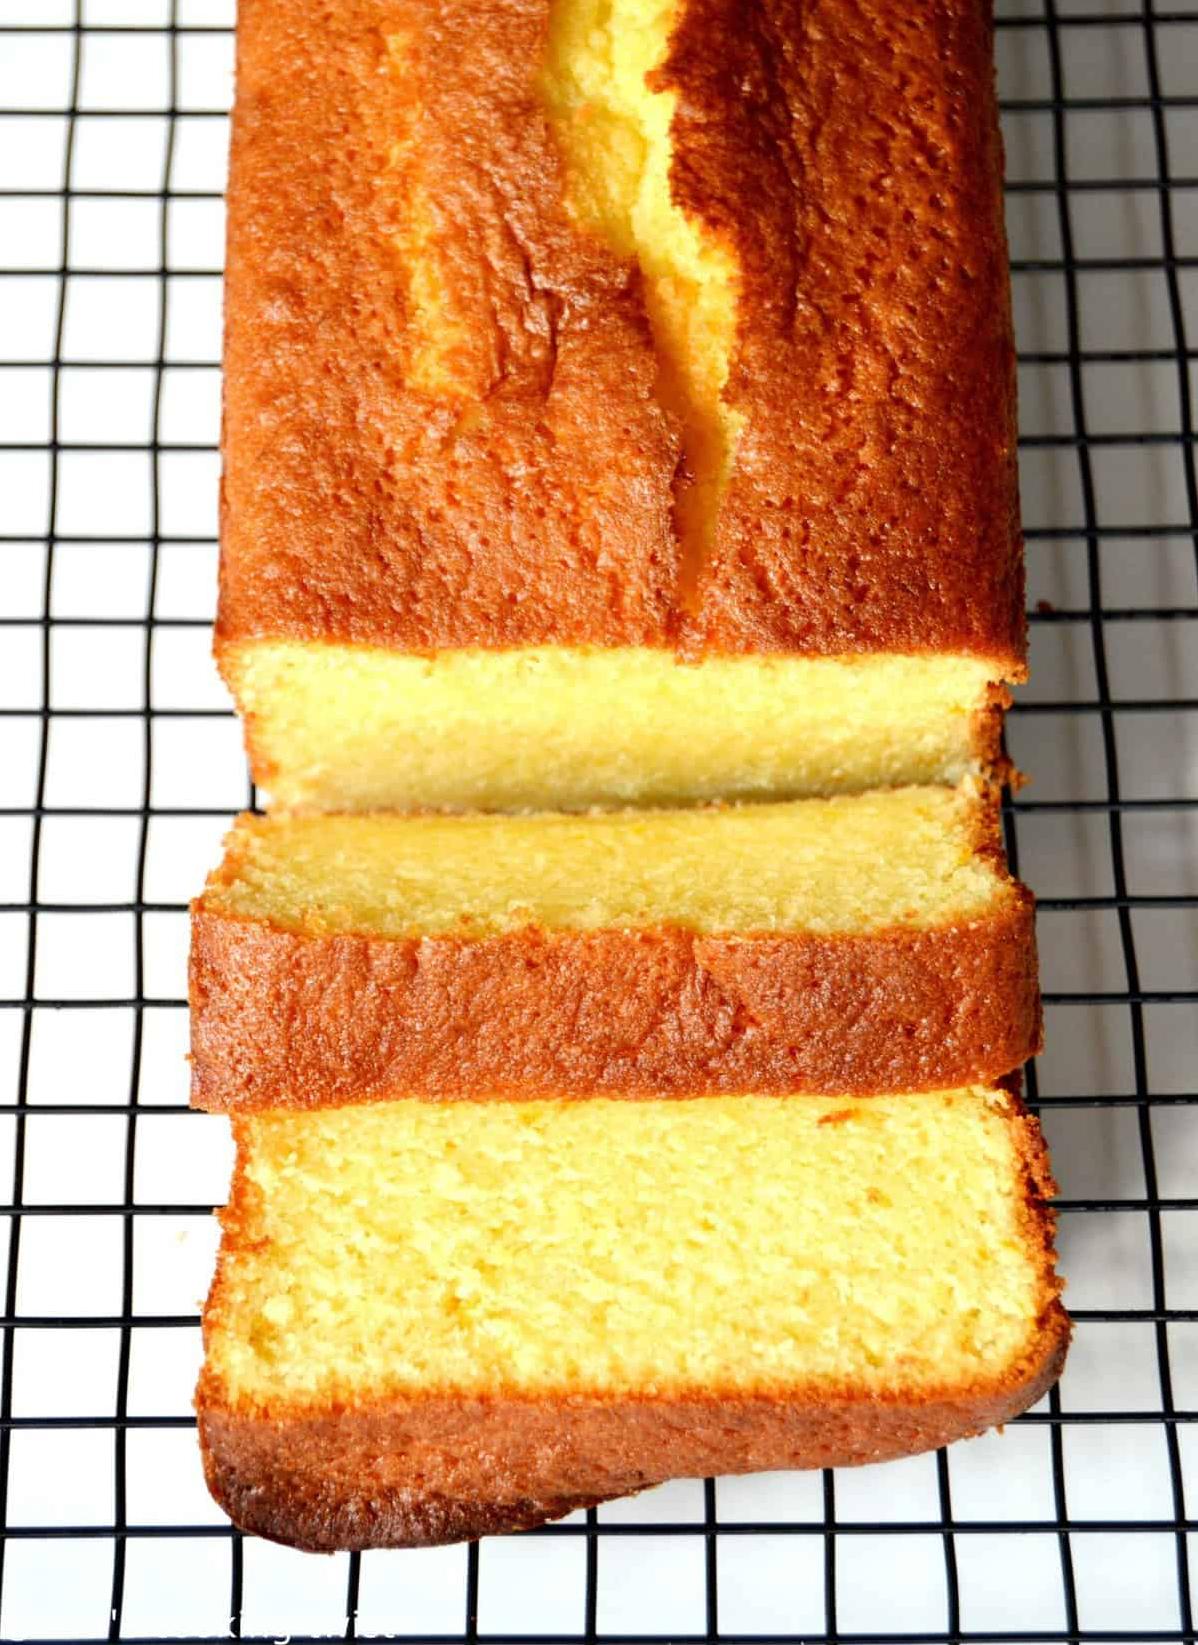 Sure, here are 11 unique photo captions for Pound Cake L'orange recipe: